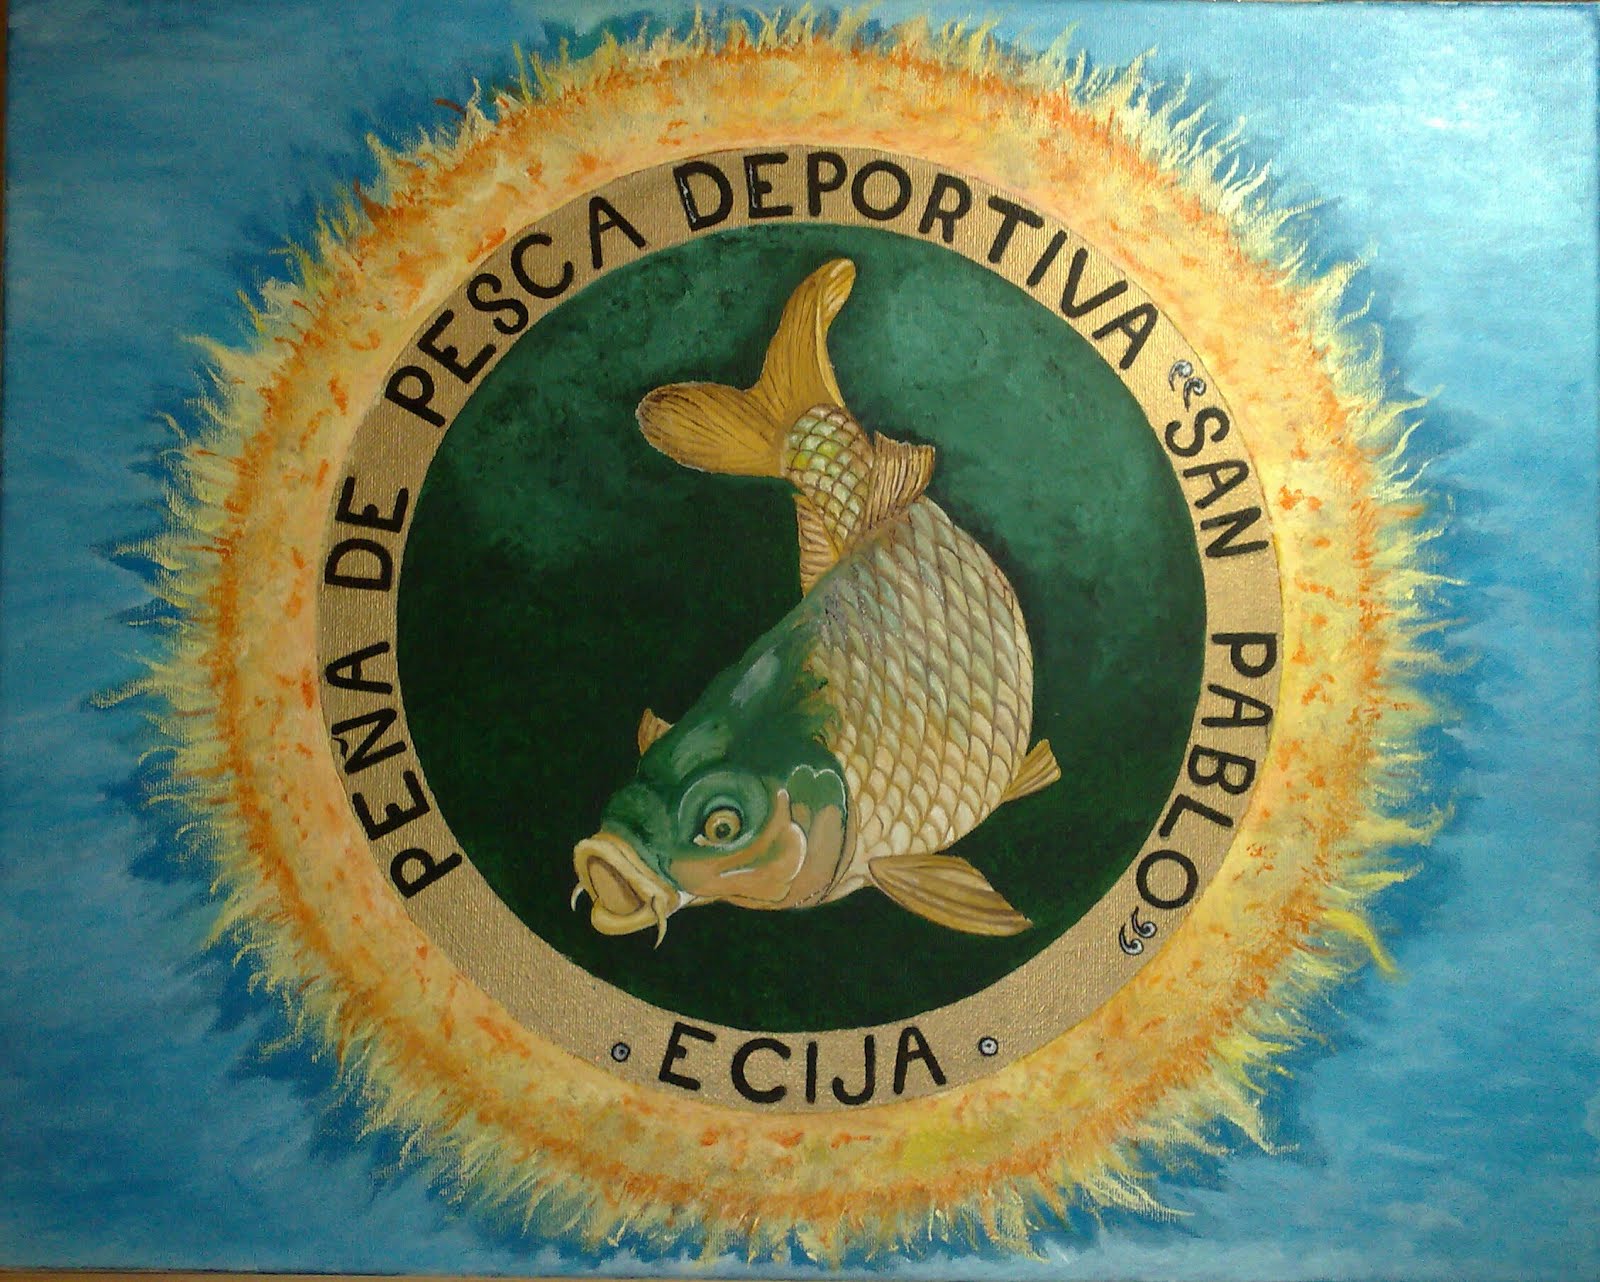 Club Pesca San Pablo Ecija